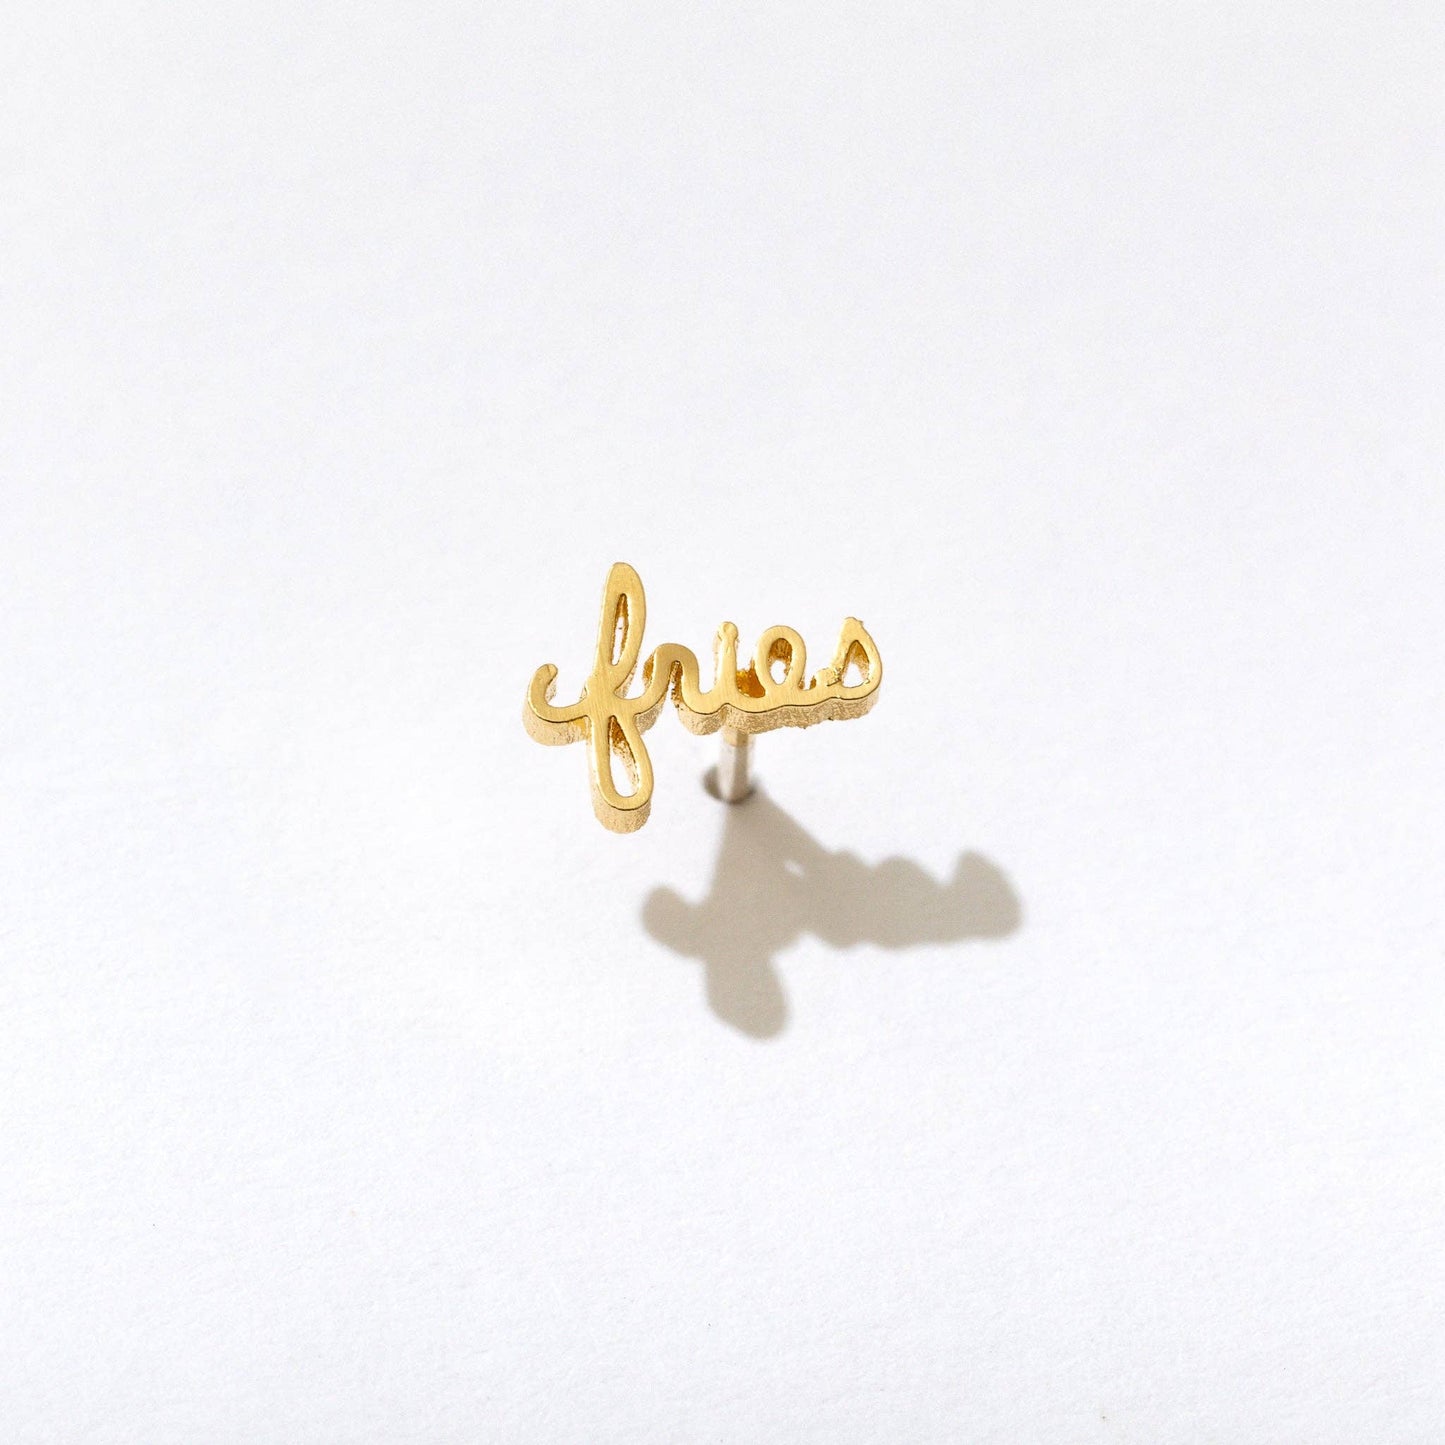 Single 14k gold plated stud earring -- reads "fries" in handwritten script